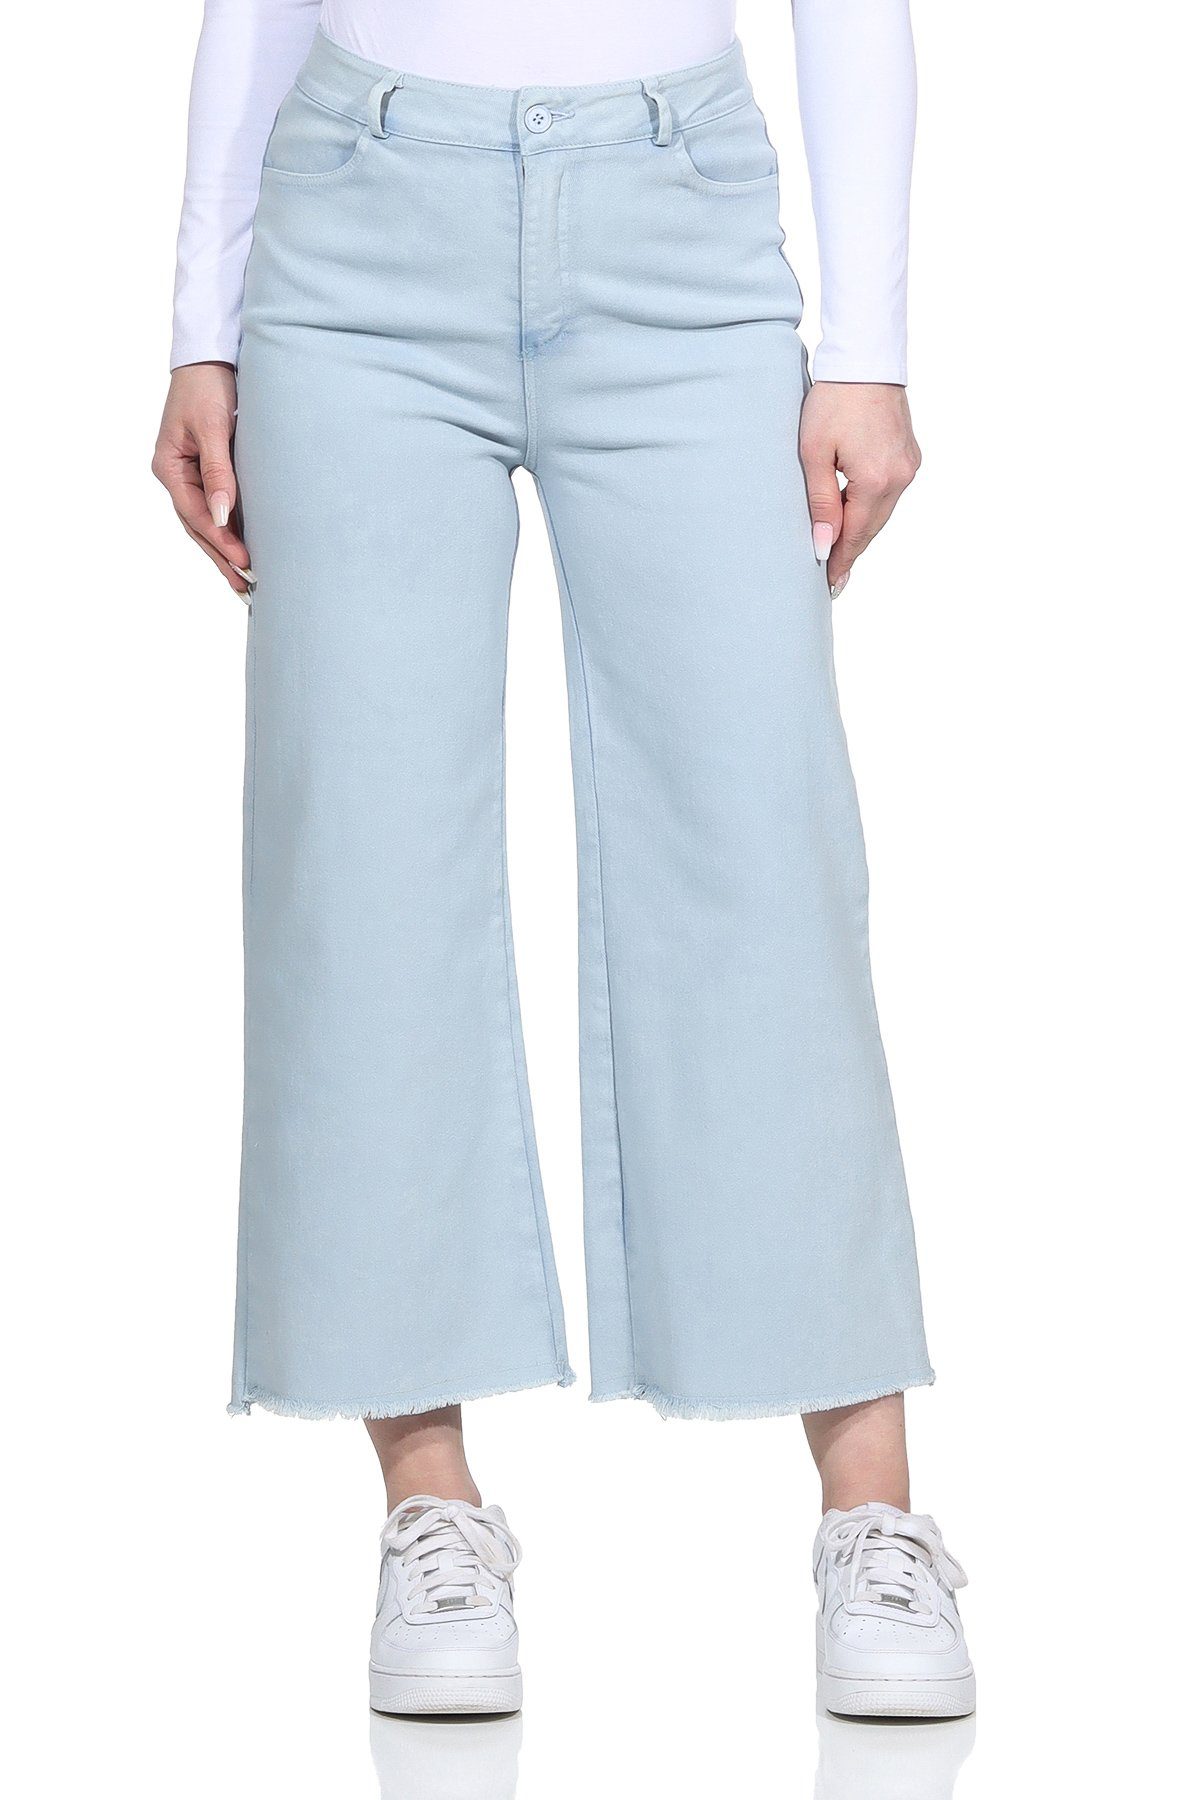 Aurela Damenmode Weite Jeans Wide Leg Jeans Culotte für Damen knöchelfrei, mit Gürtelschlaufen, 100% Baumwolle Hellblau